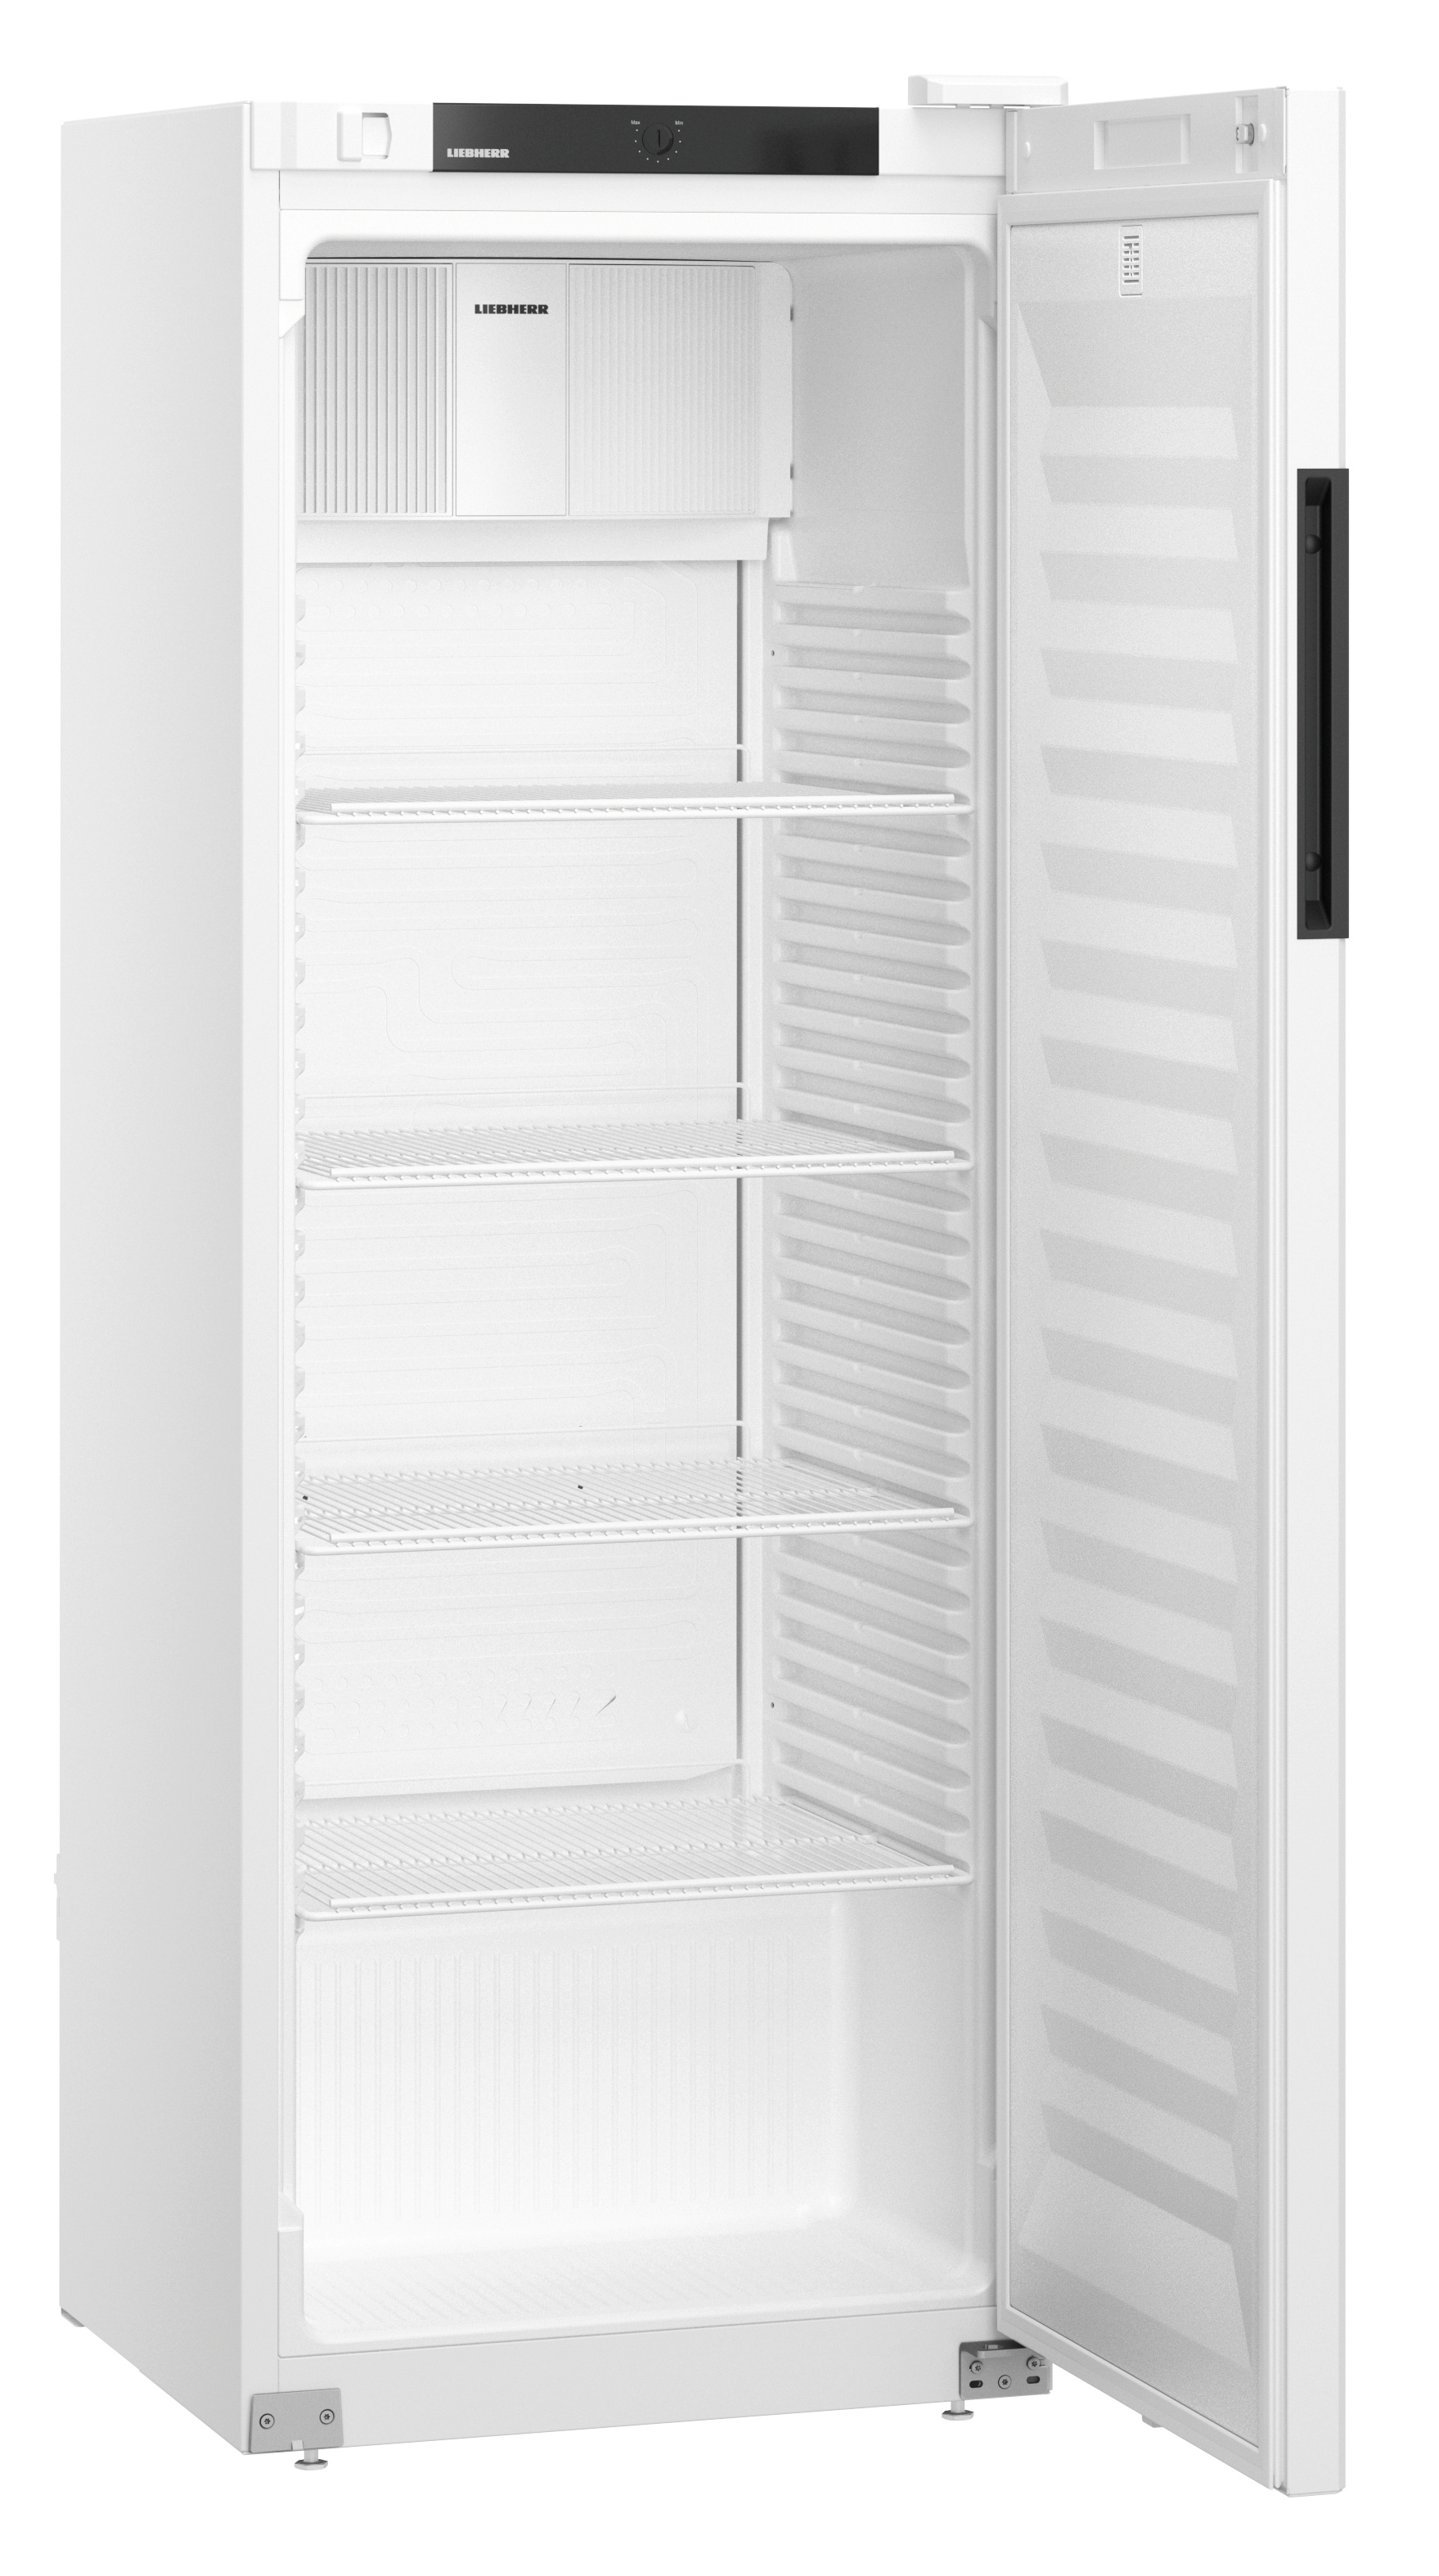 327 literes hűtőszekrény, ventilációs, fehér, teleajtós